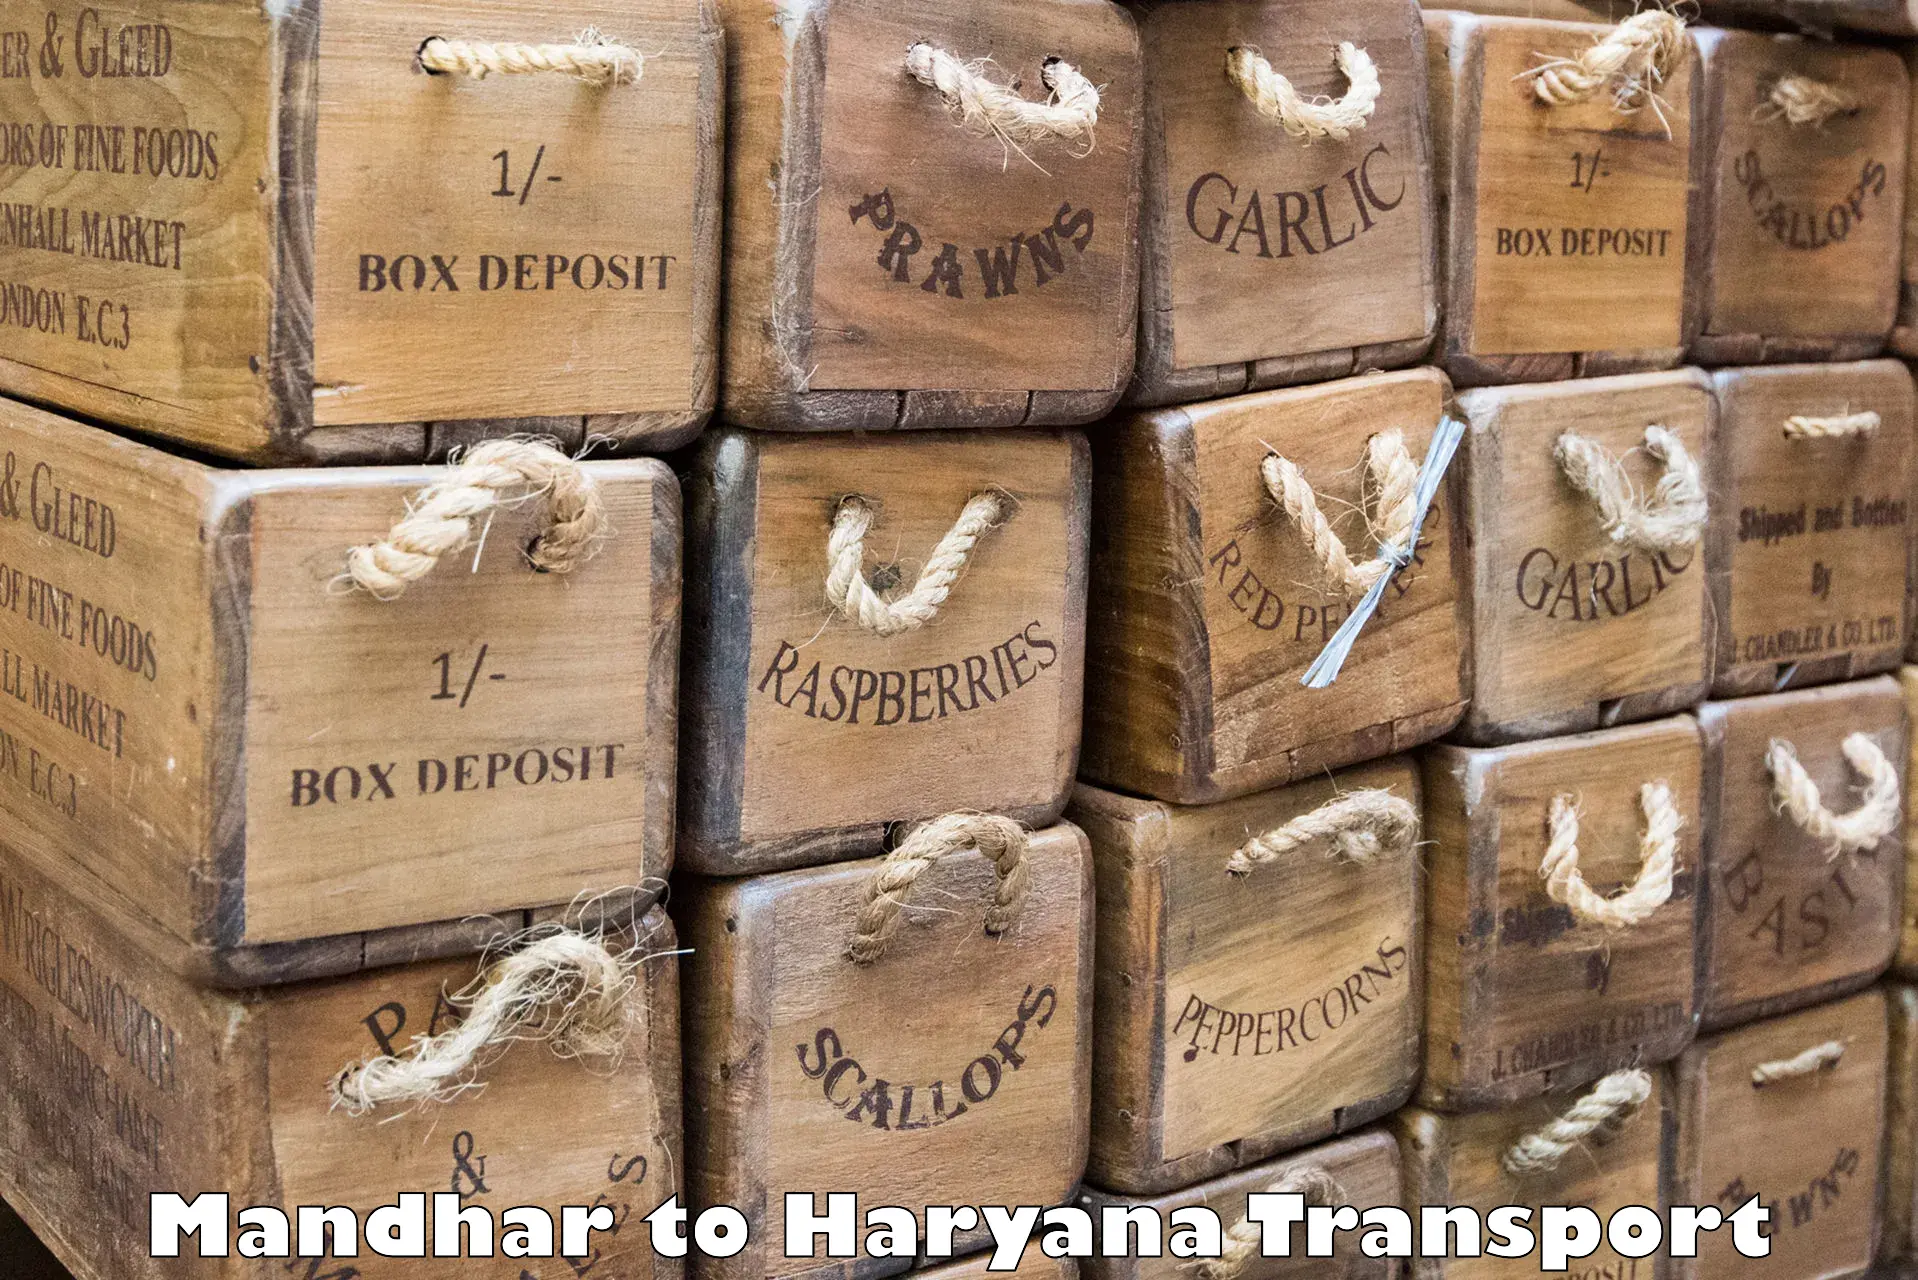 Daily transport service Mandhar to Rewari